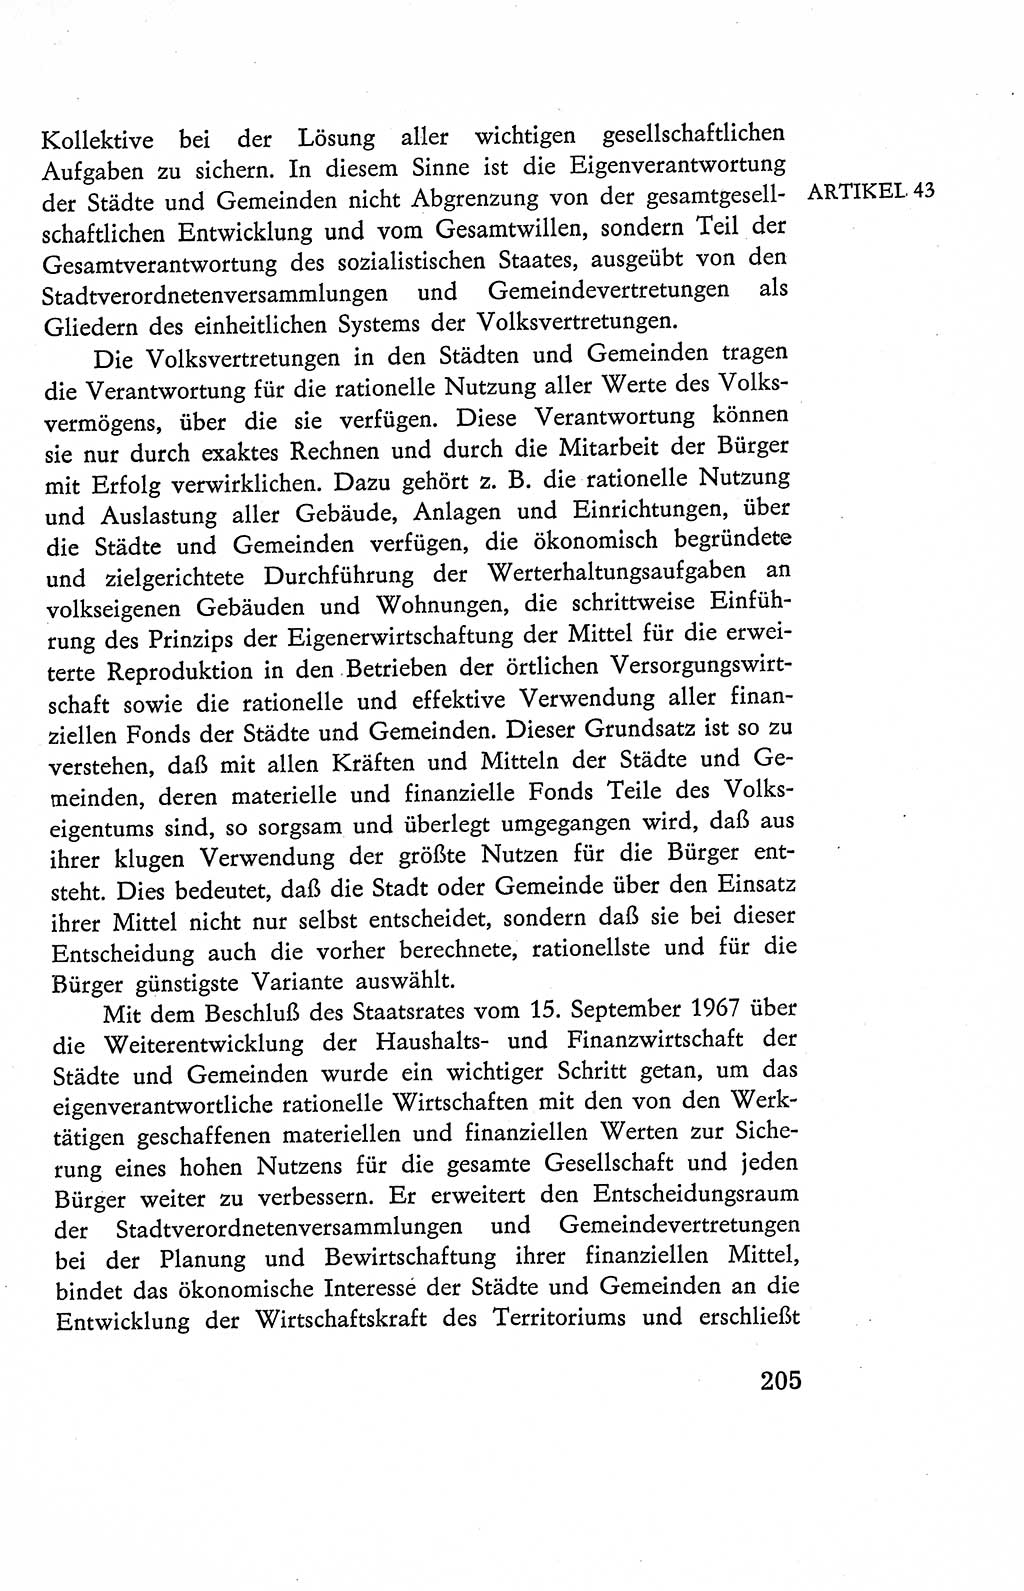 Verfassung der Deutschen Demokratischen Republik (DDR), Dokumente, Kommentar 1969, Band 2, Seite 205 (Verf. DDR Dok. Komm. 1969, Bd. 2, S. 205)